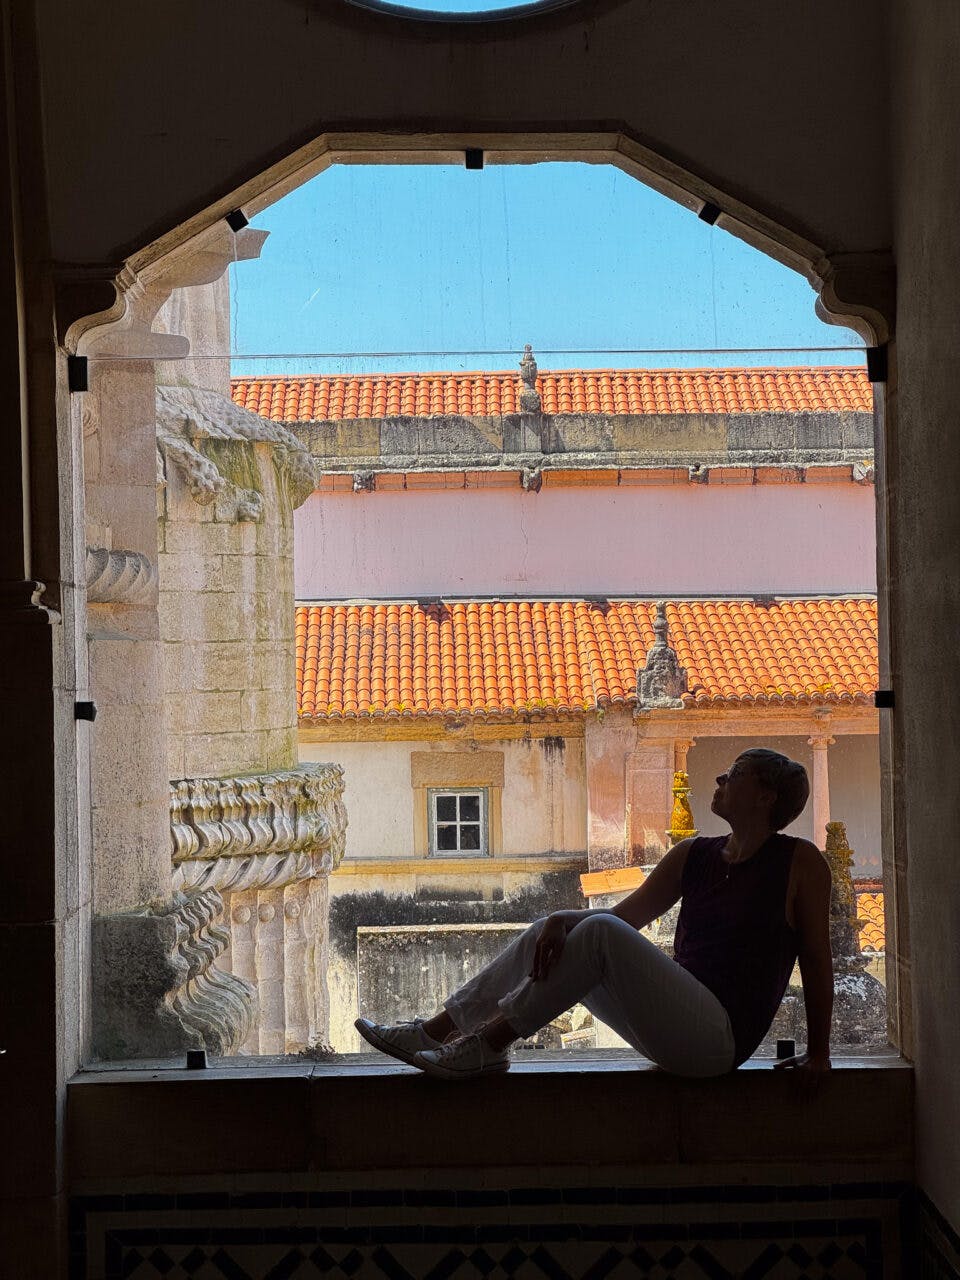 Cień kobiety na oknie w klasztorze w Portugalii.